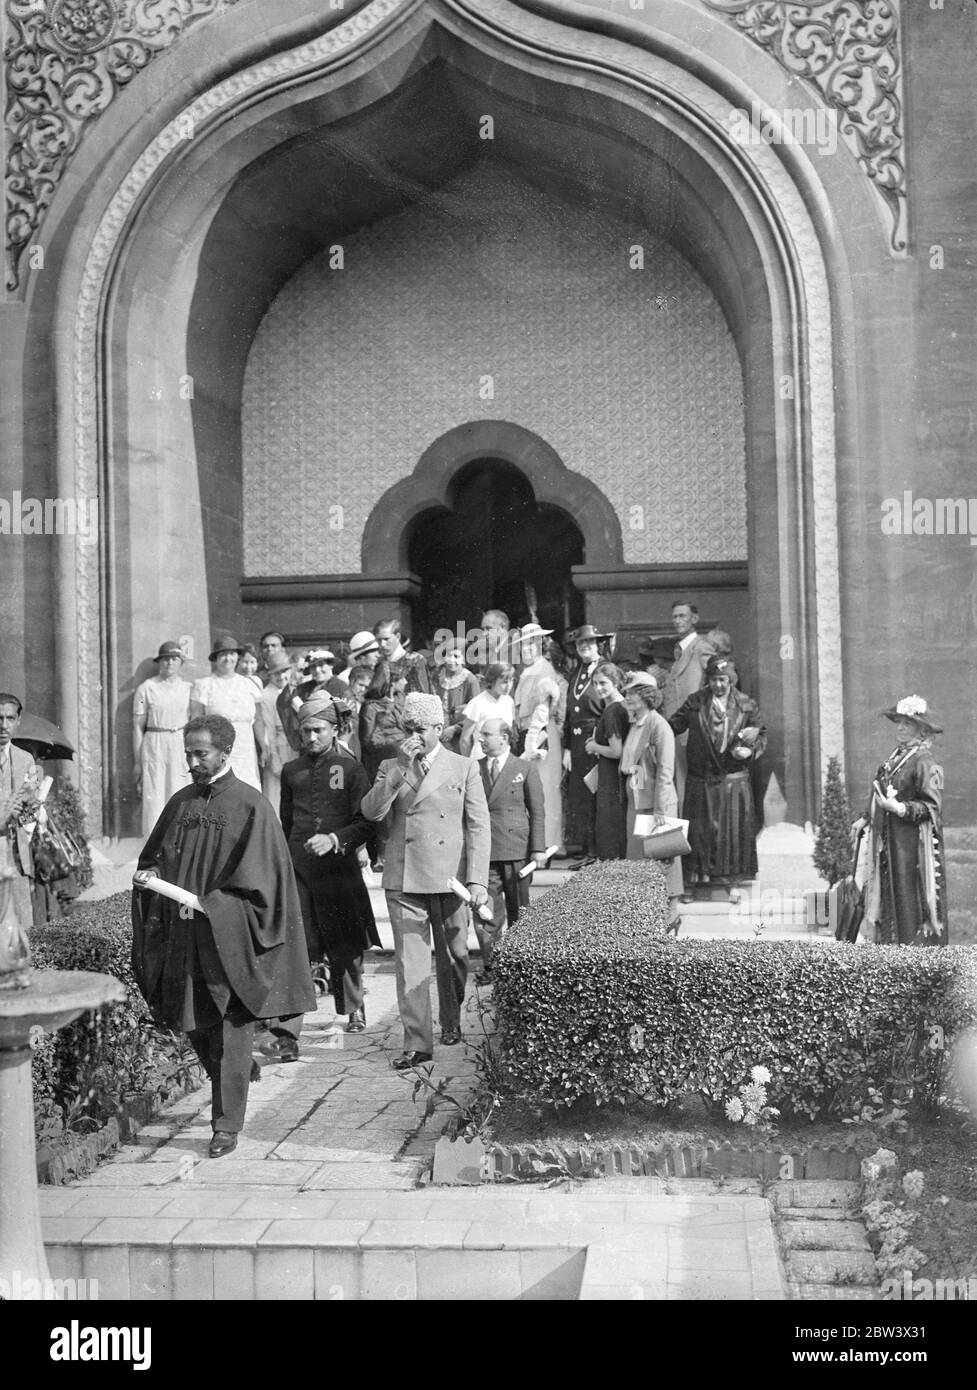 L'imperatore Haile Selassie d'Etiopia e i membri della sua famiglia e suite hanno visitato la Moschea di Woking (Surrey) da Bath . La comunità musulmana ha dato un indirizzo di benvenuto , e i potentati indiani erano presenti . Spettacoli fotografici : Imperatore Haile Selassie alla Moschea . 25 ago 1936 titolo originale negativo la moschea Shah Jahan fu la prima moschea costruita appositamente in Europa al di fuori della Spagna musulmana Foto Stock